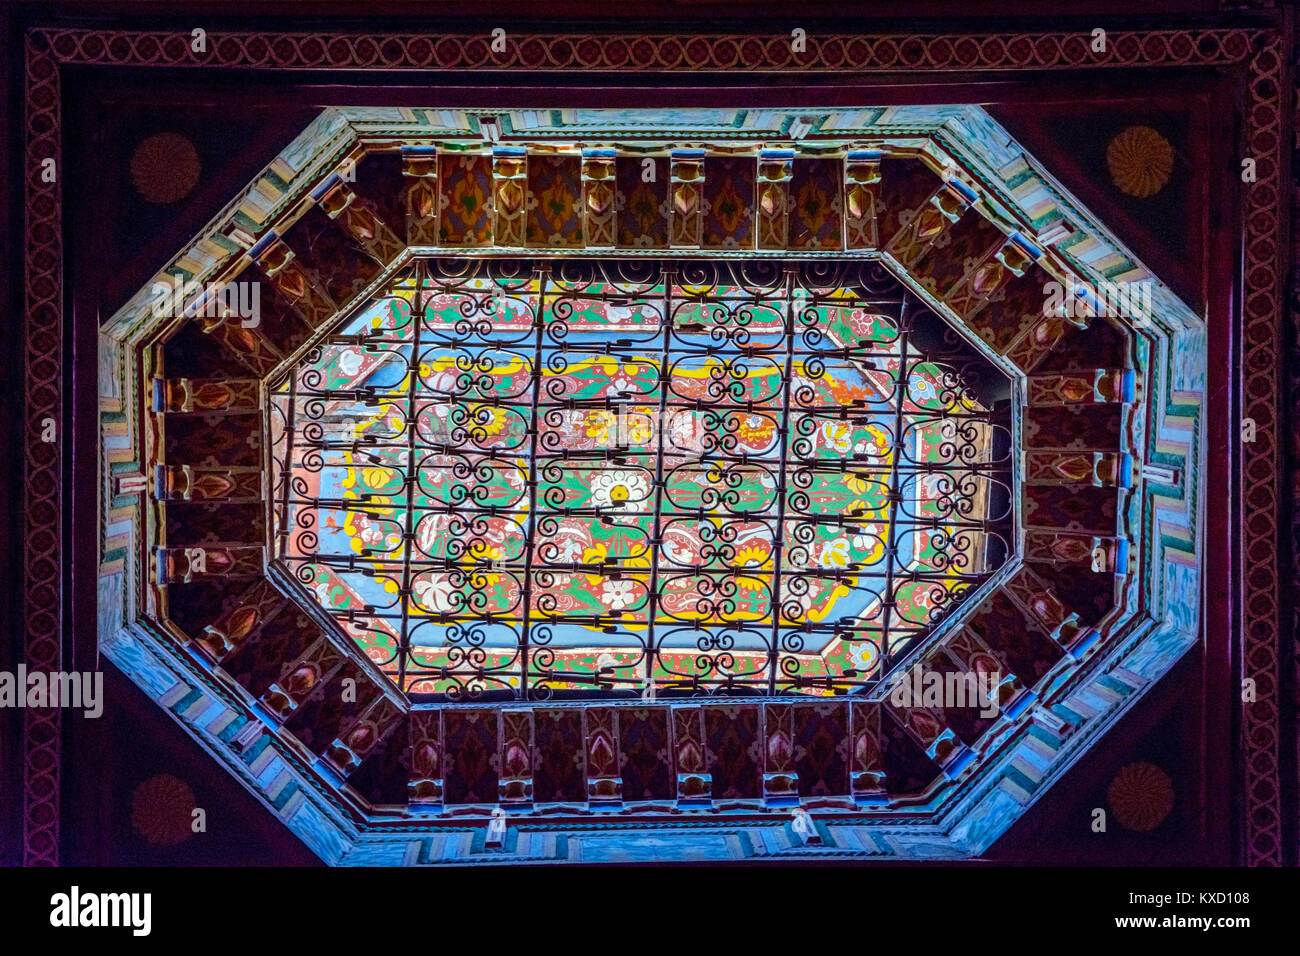 MARRAKECH, Marruecos - 11 de diciembre: Los patrones y colores de la luz en el techo del palacio Bahia, Marrakech. Diciembre de 2016 Foto de stock